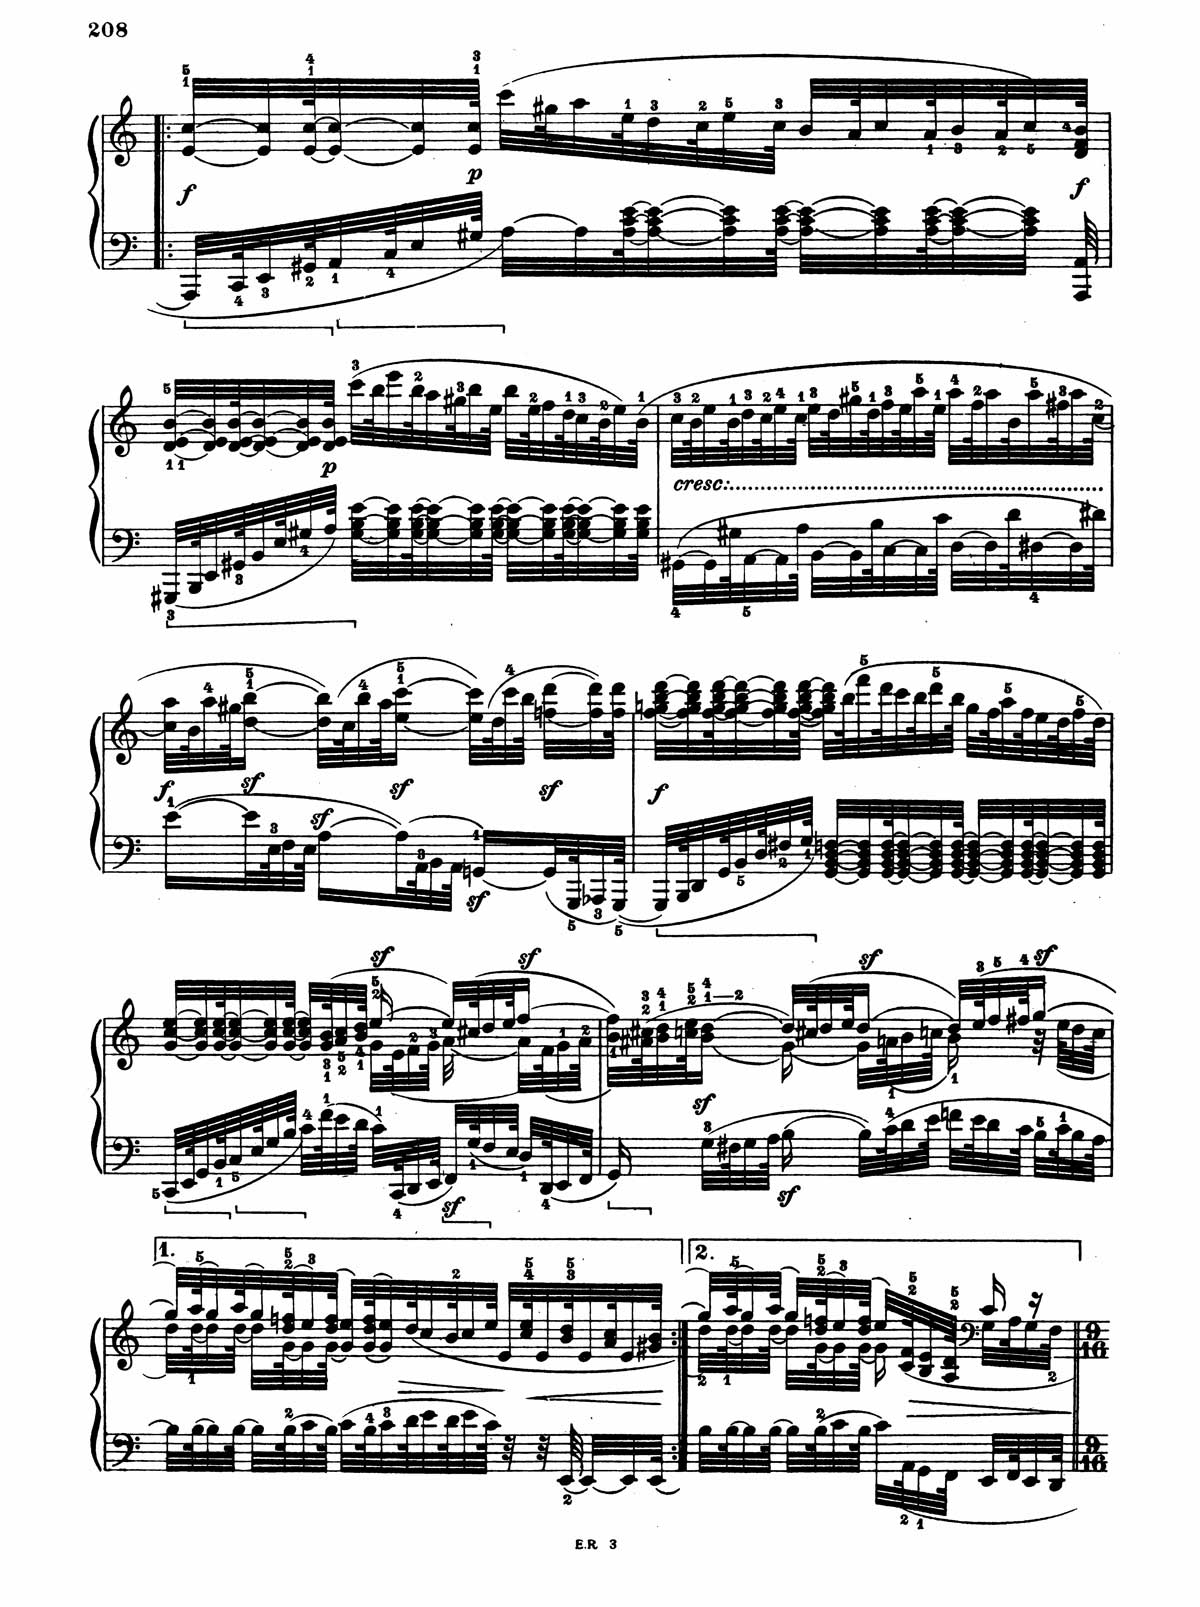 Beethoven Piano Sonata 32-16 sheet music